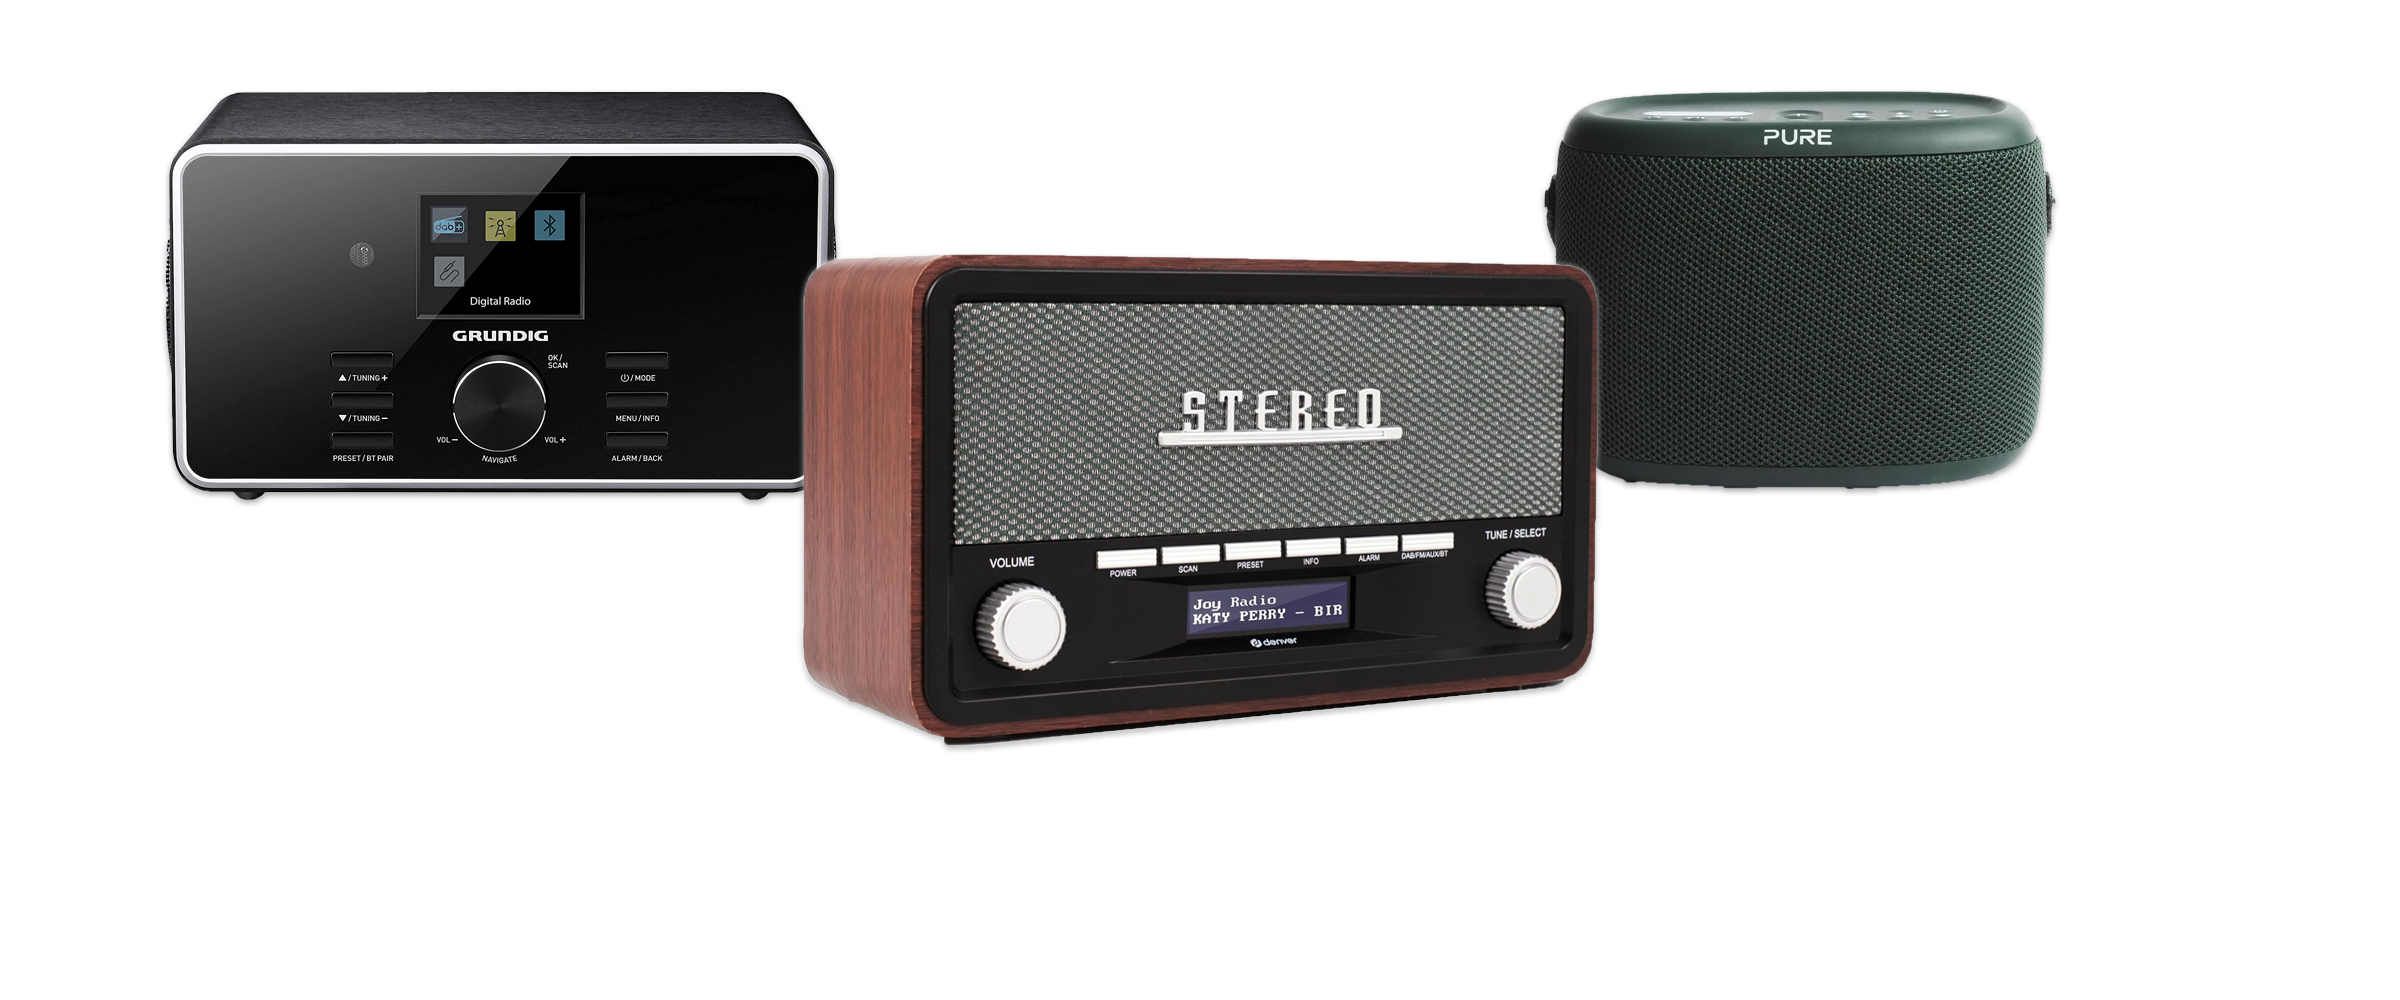 Drei verschiedene DAB-Radios vor weißem Hintergrund. Das Mittlere ist im Retro-Stil mit Holz-Optik, Links sieht man ein modernes mit glänzender, schwarzer Oberfläche und Rechts ein Outdoor-Gerät in Waldgrün.